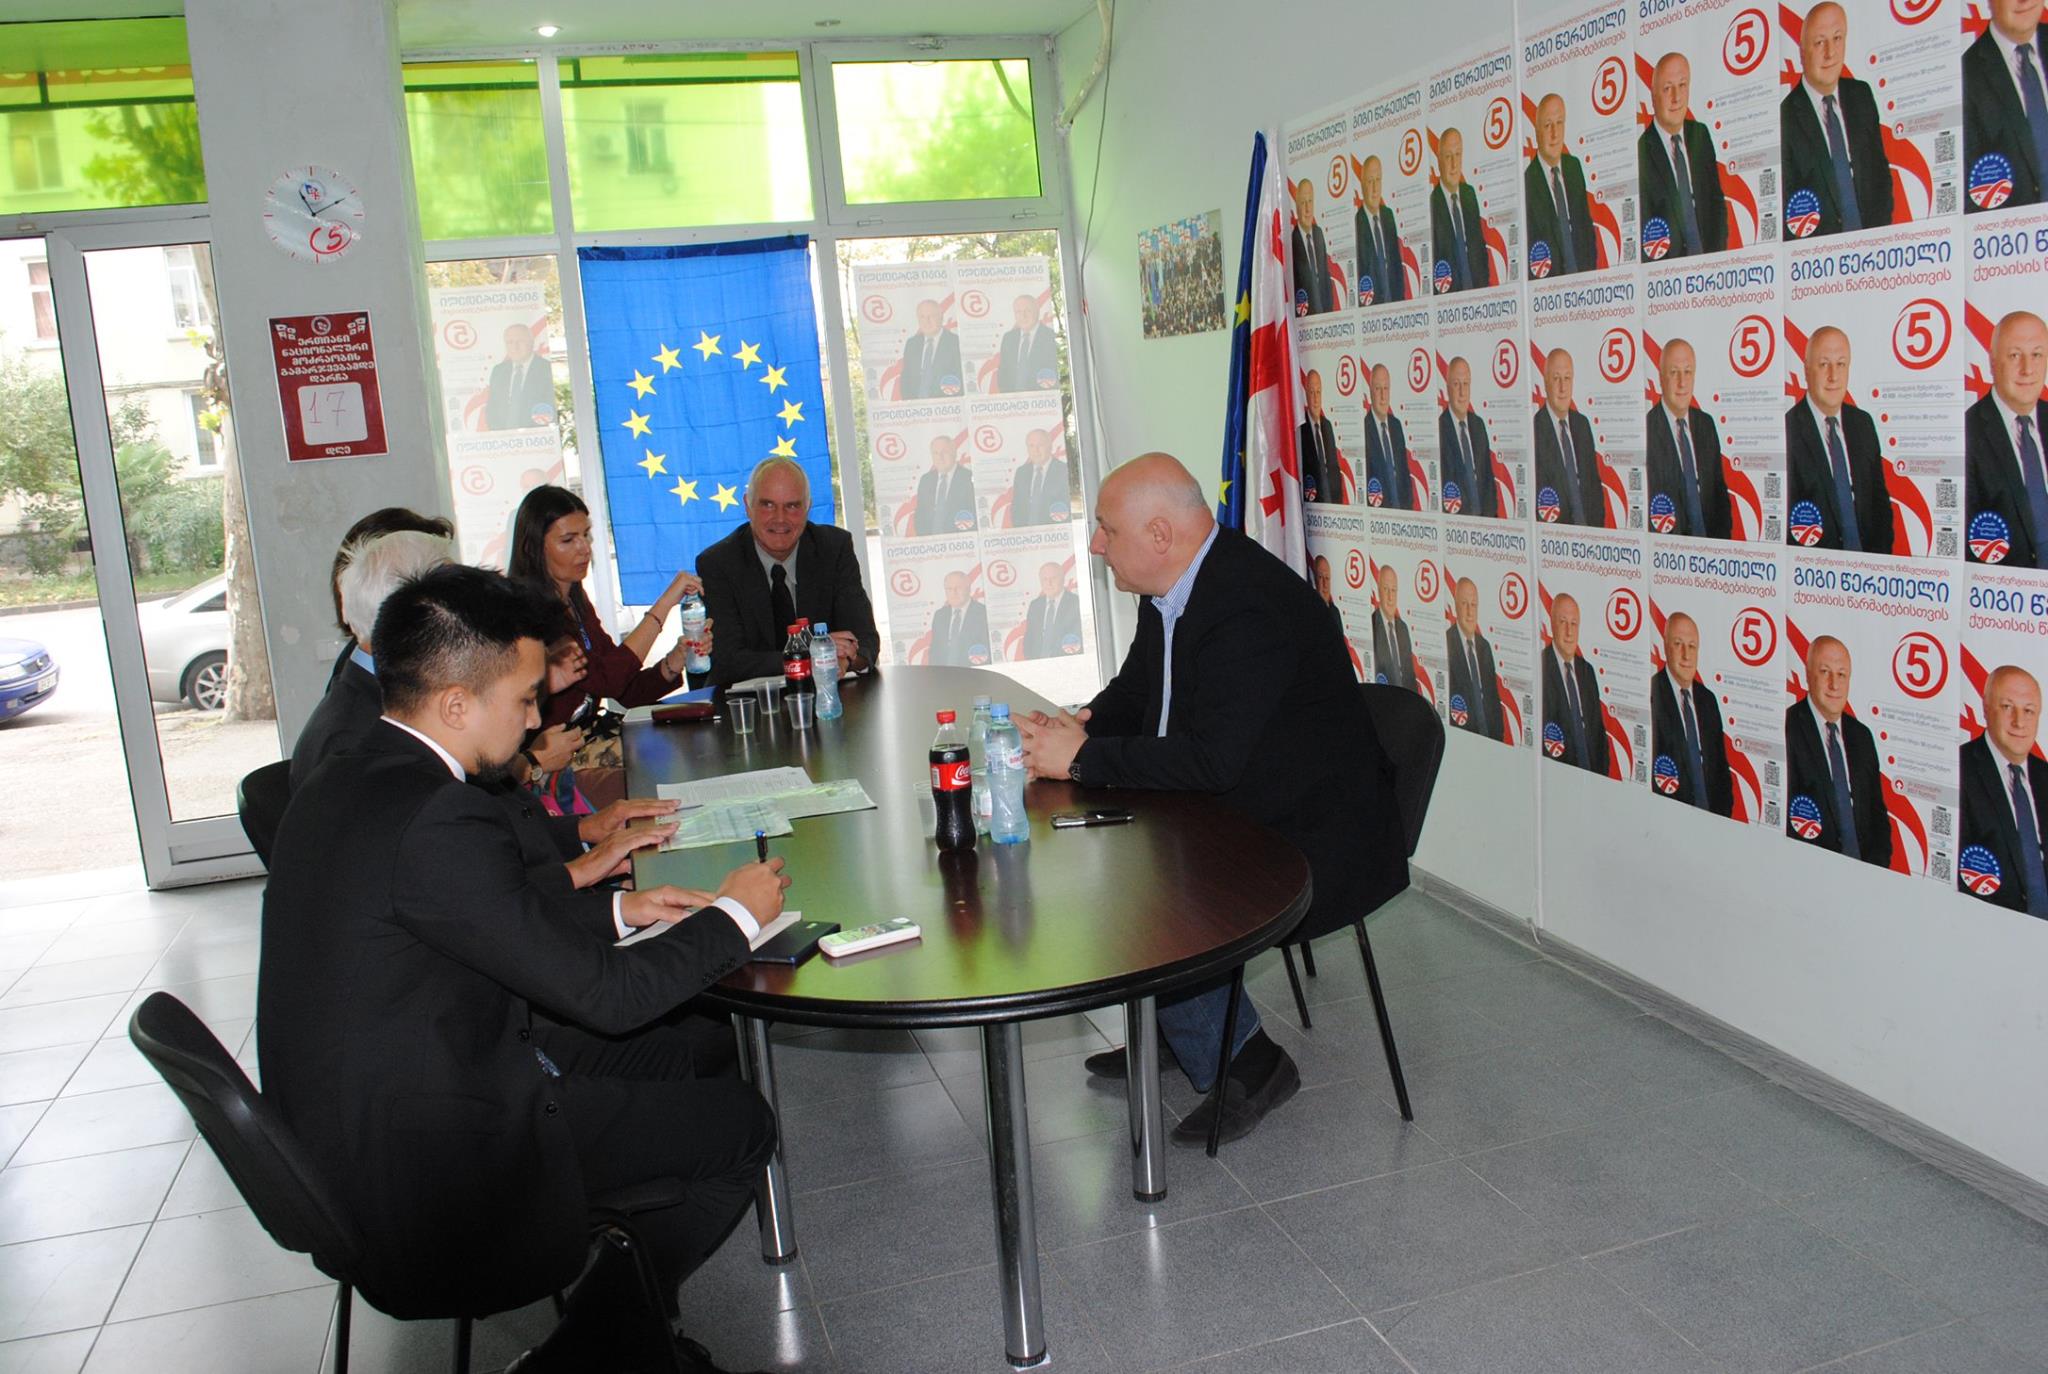 გიგი წერეთელი OSCE და ODIHR -ის წარმომადგენლებთან ერთად ეუთოს საარჩევნო სადამკვირვებლო მისიის ხელმძღვანელს შეხვდა